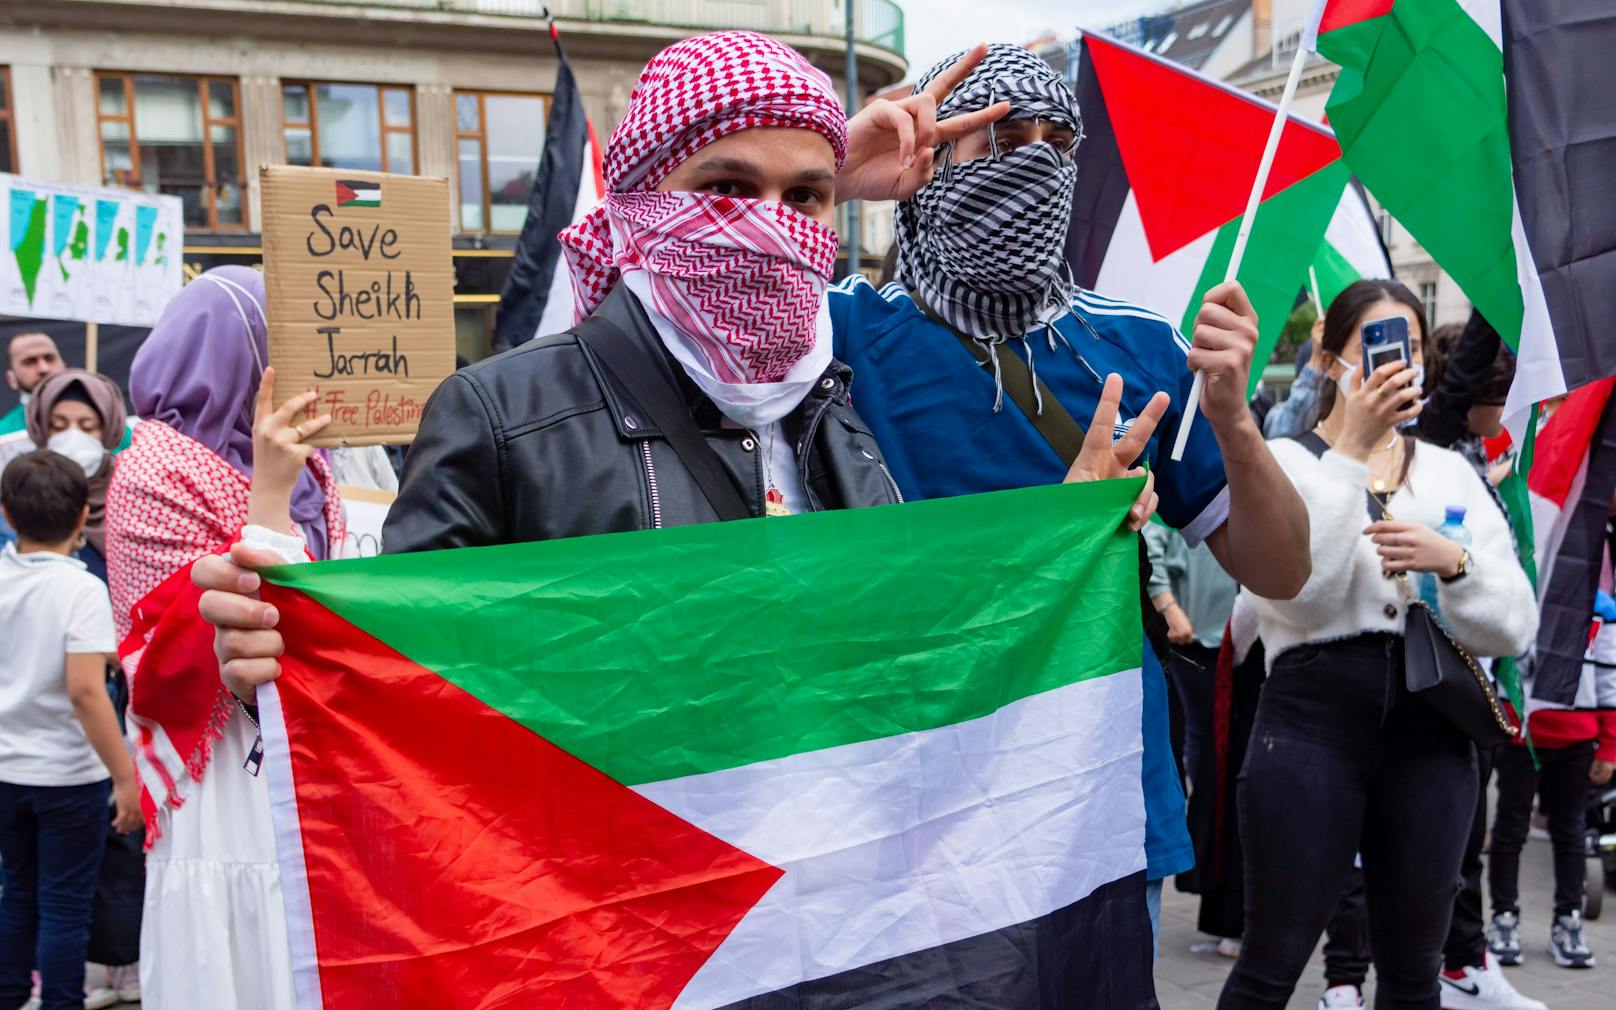 Grazer Polizei untersagt Pro-Palästina-Demo am Samstag